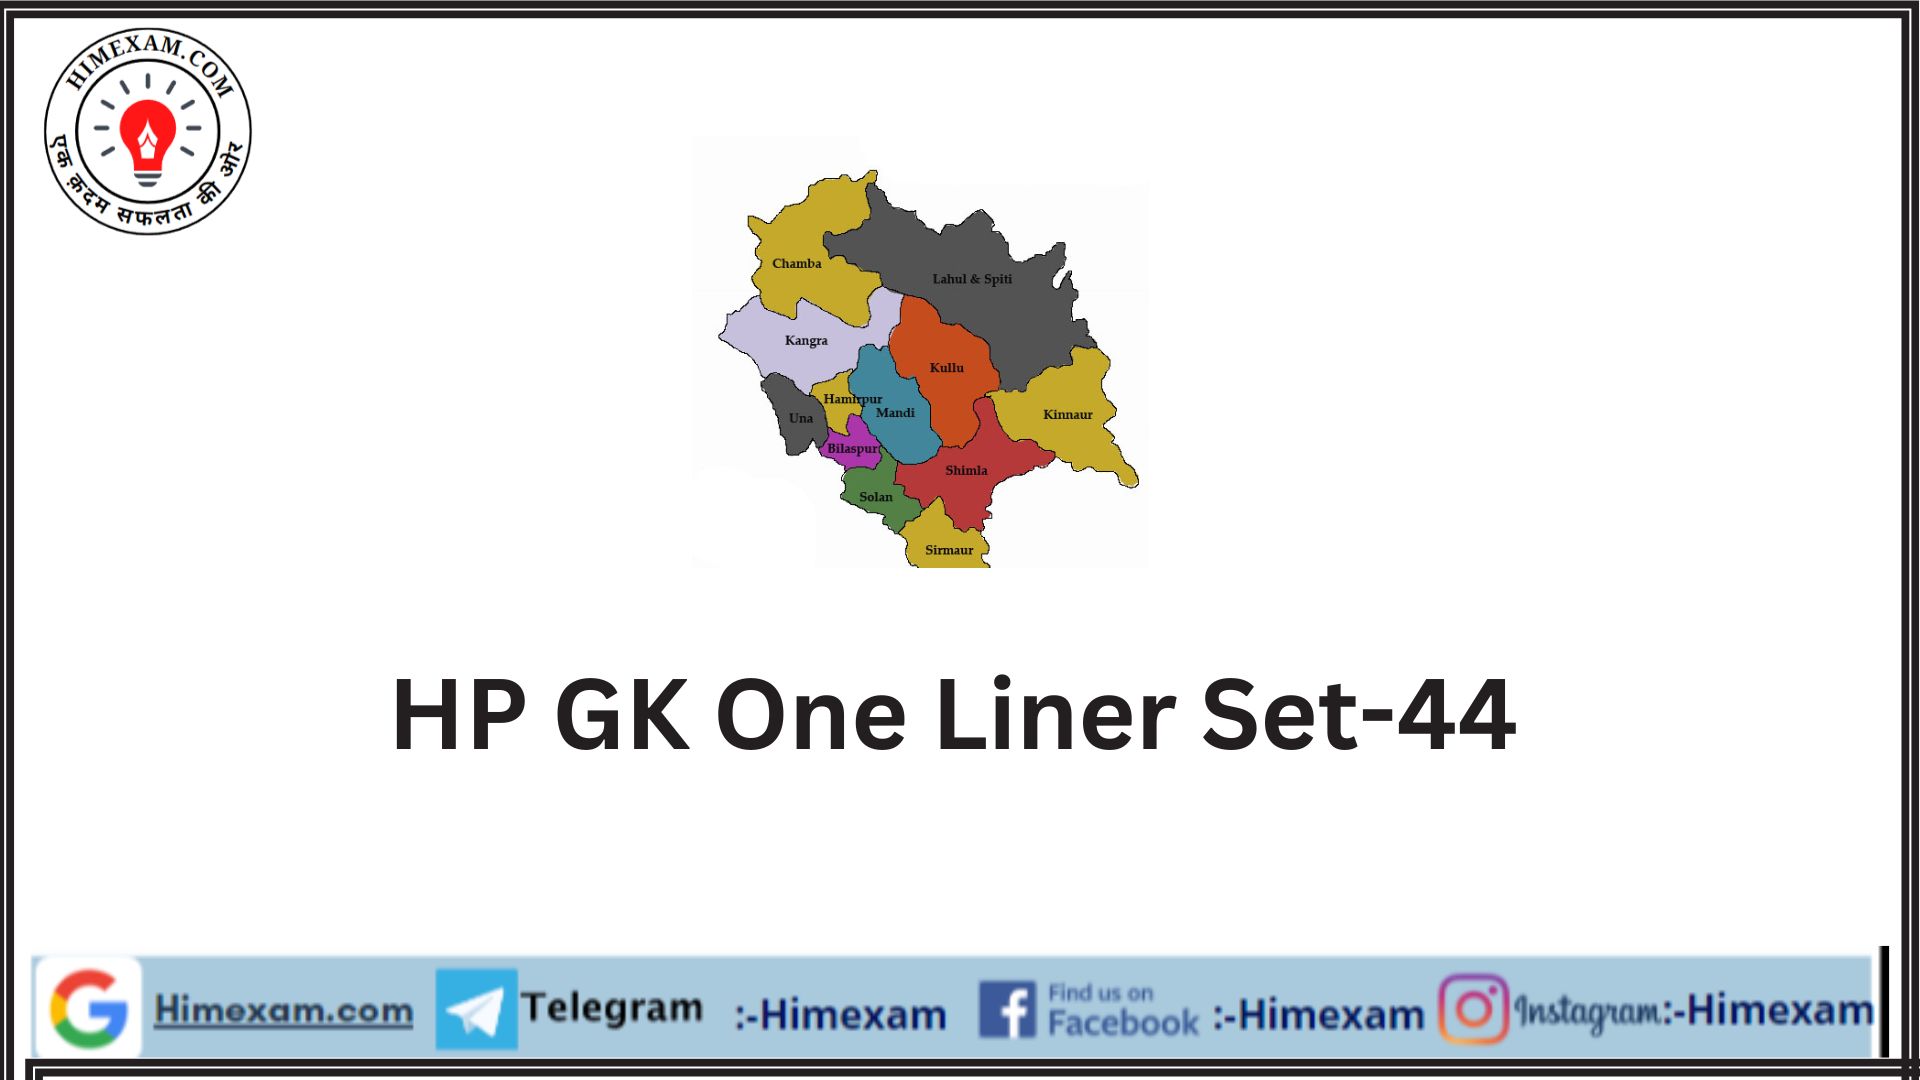 HP GK One Liner Set-44